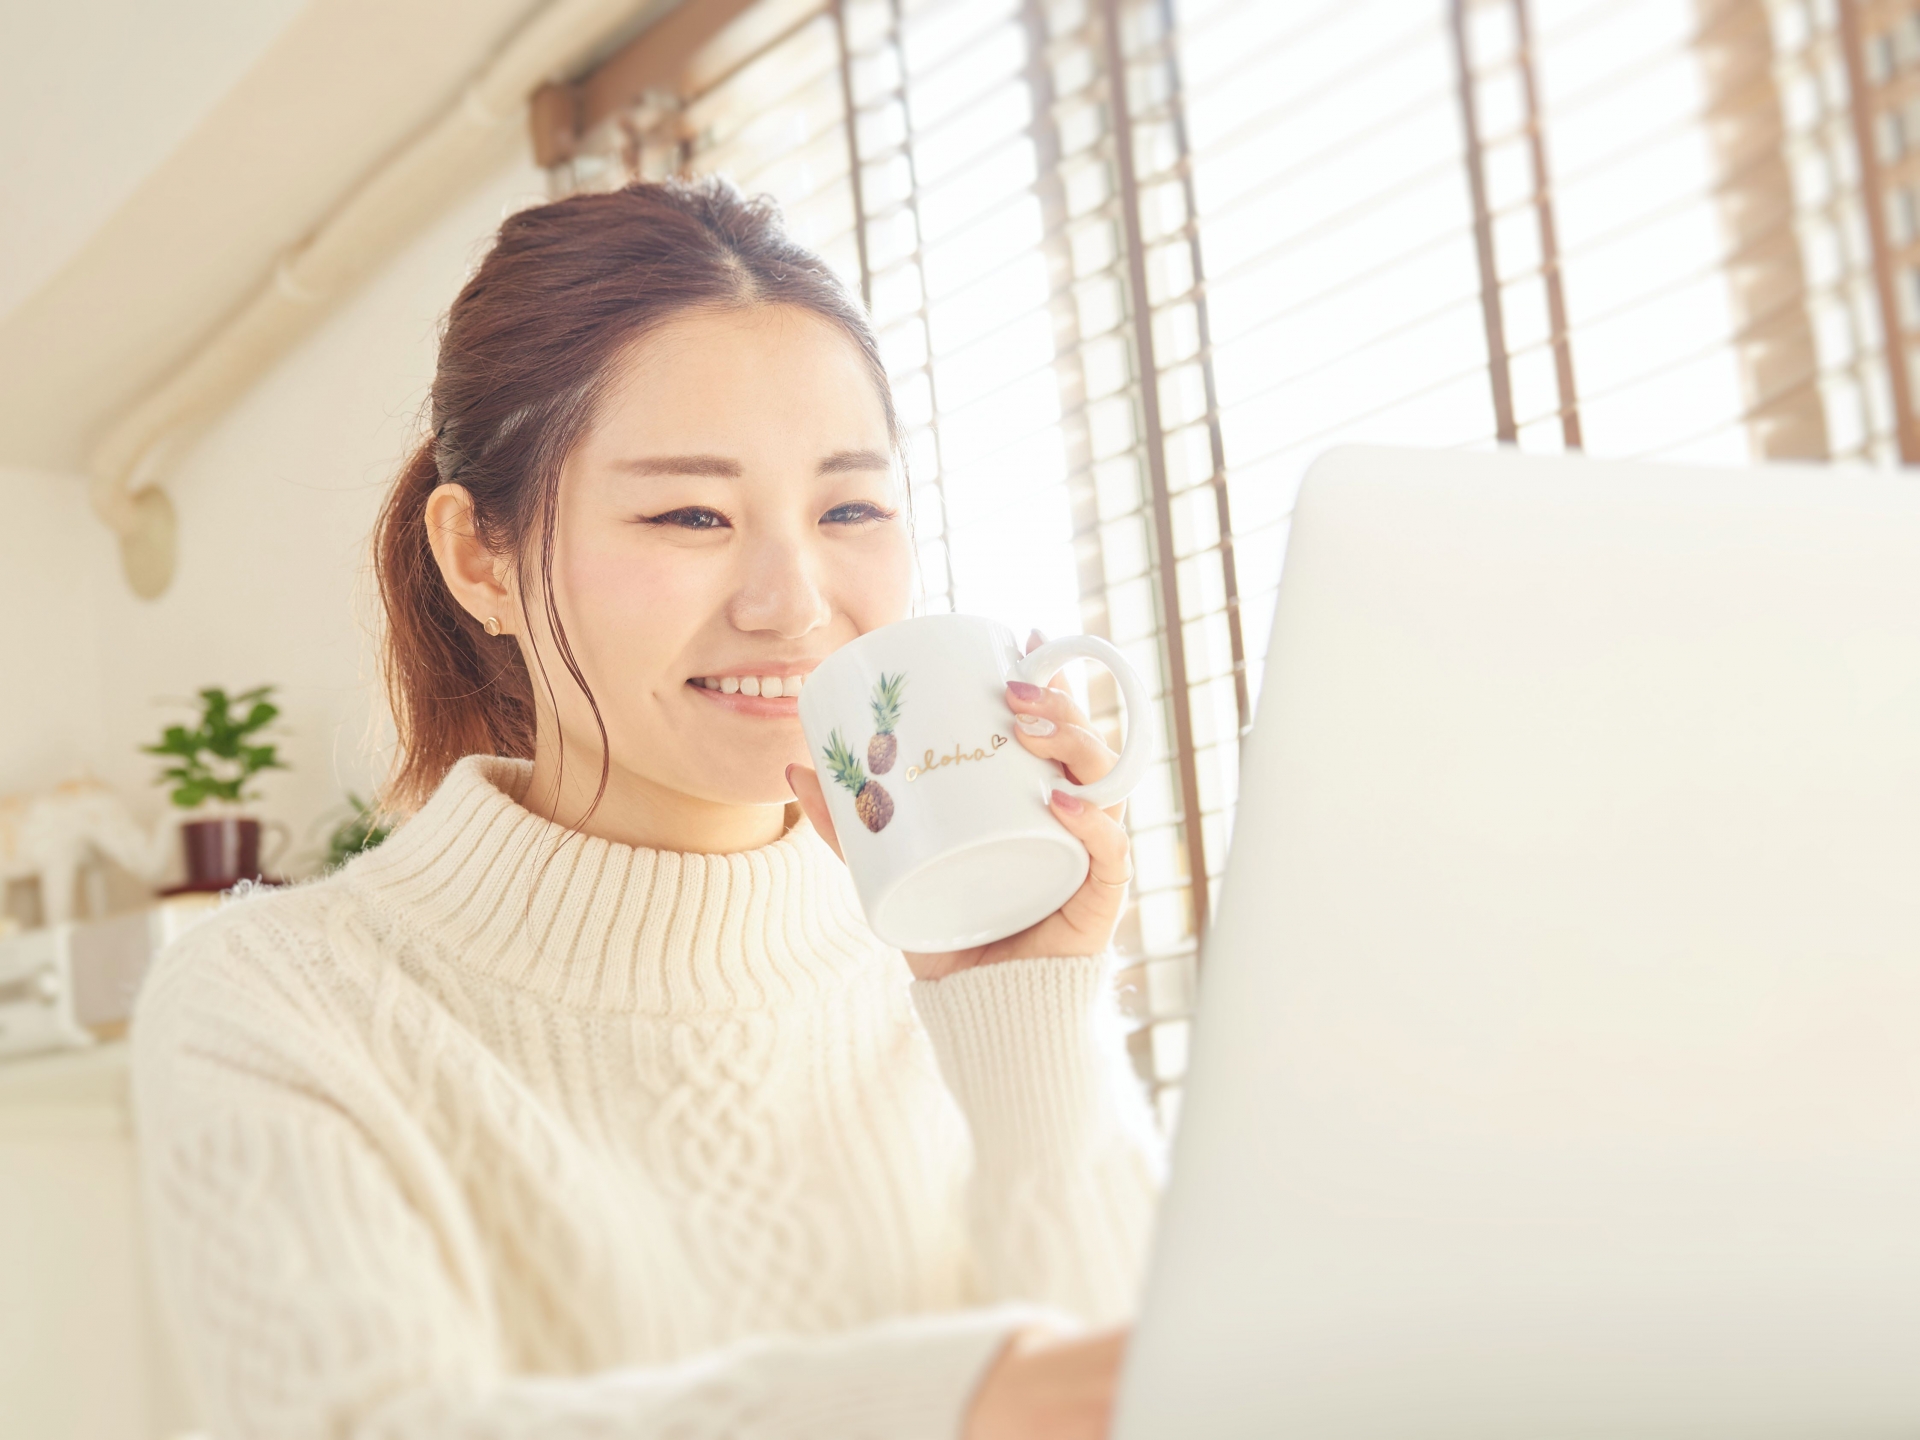 お茶を飲みながらパソコンをする女性の写真